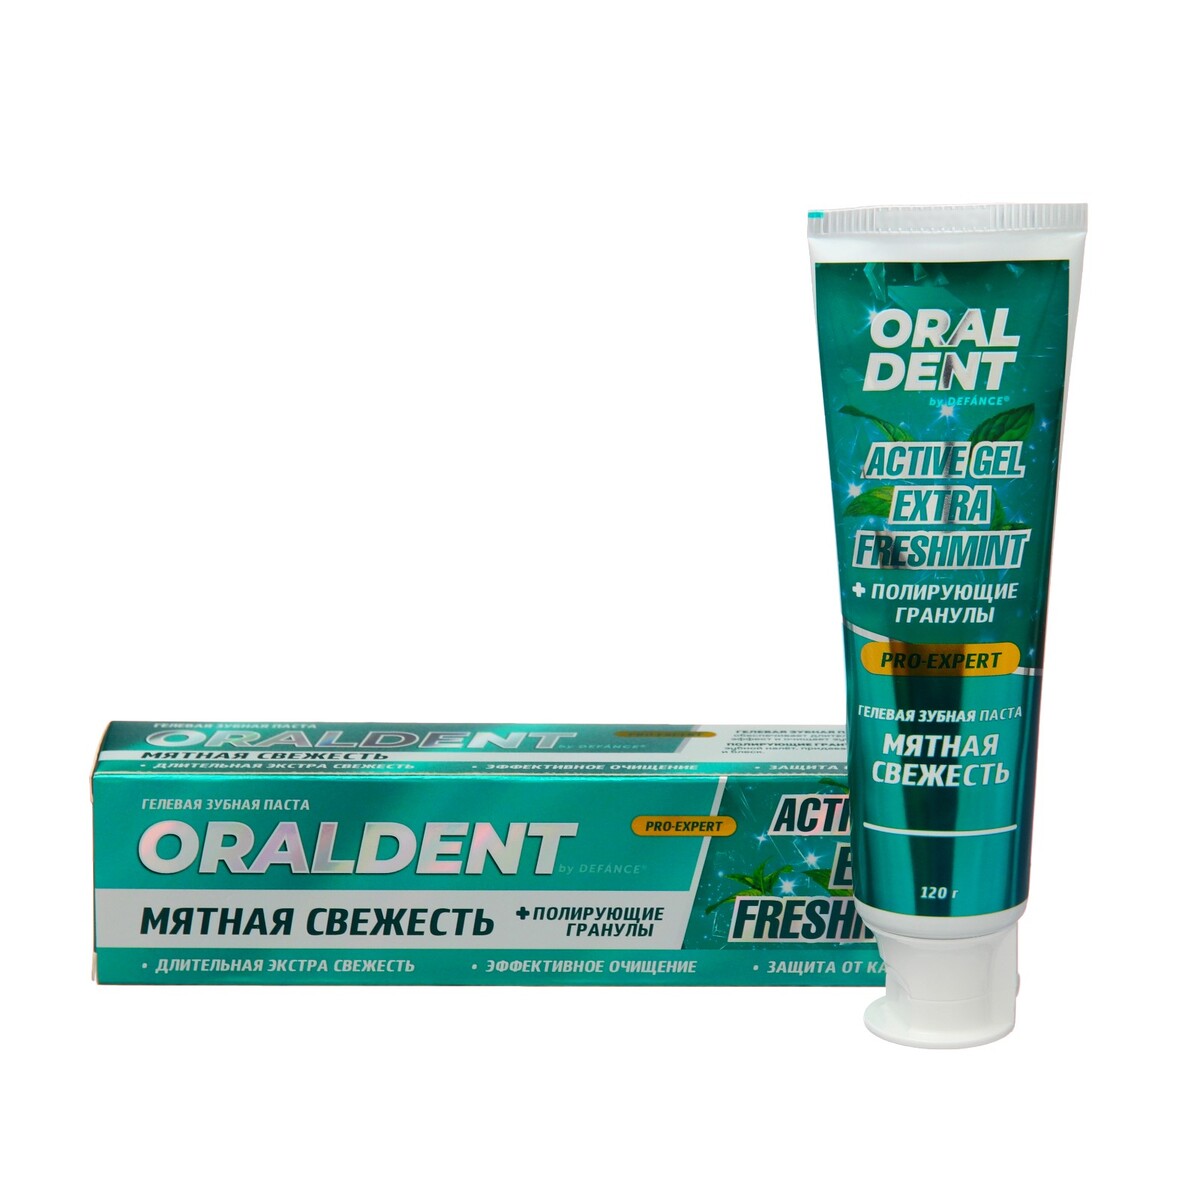 Зубная паста defance oraldent active gel extra freshmint, 120 г смайл эксперт про вайтенинг зубная паста бережное отбеливание 75 мл